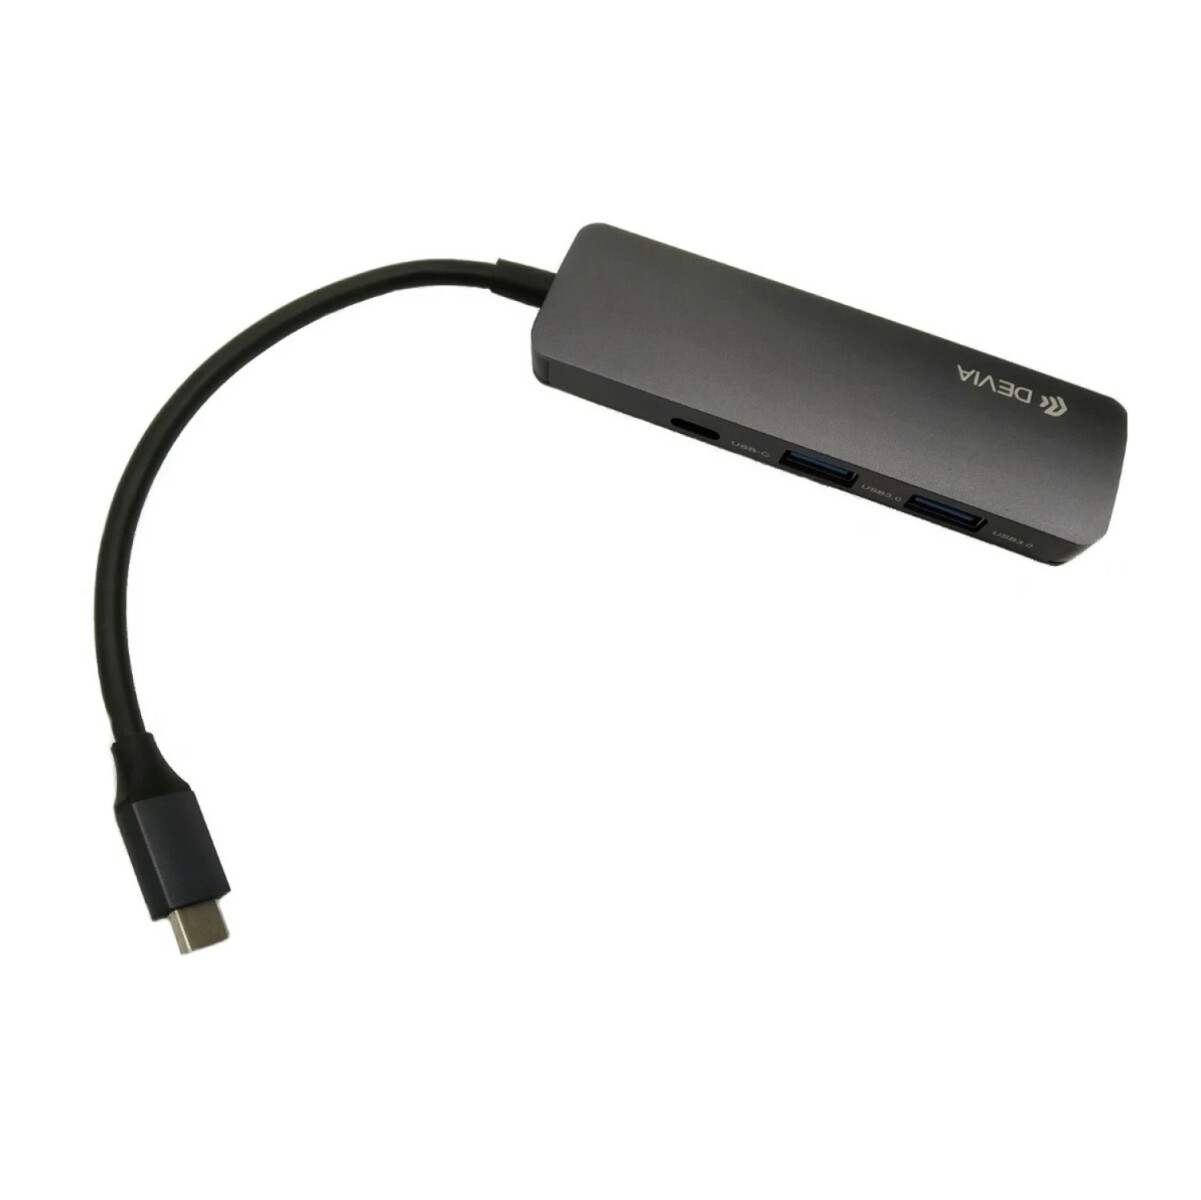 ADAPTADOR HUB DEVIA 4 EN 1 | USB TIPO-C A HDMI + USB3.0*2 + PD DEVIA (Updated) - Grey 